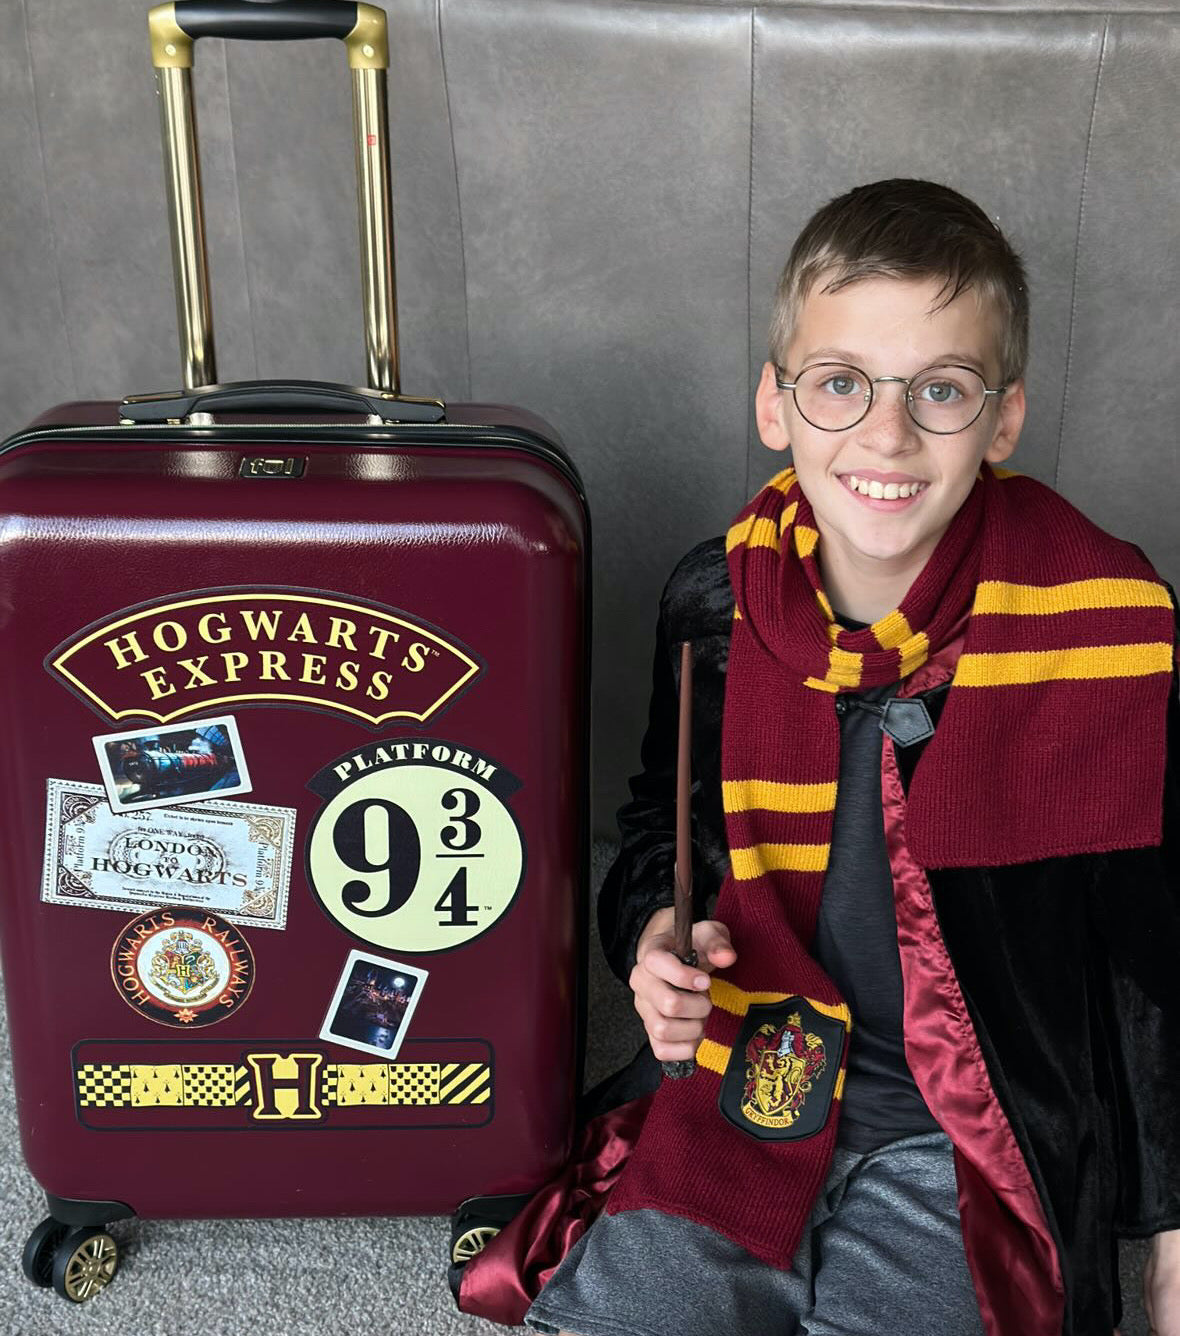 Universal Stationary Set - Hogwarts Luggage